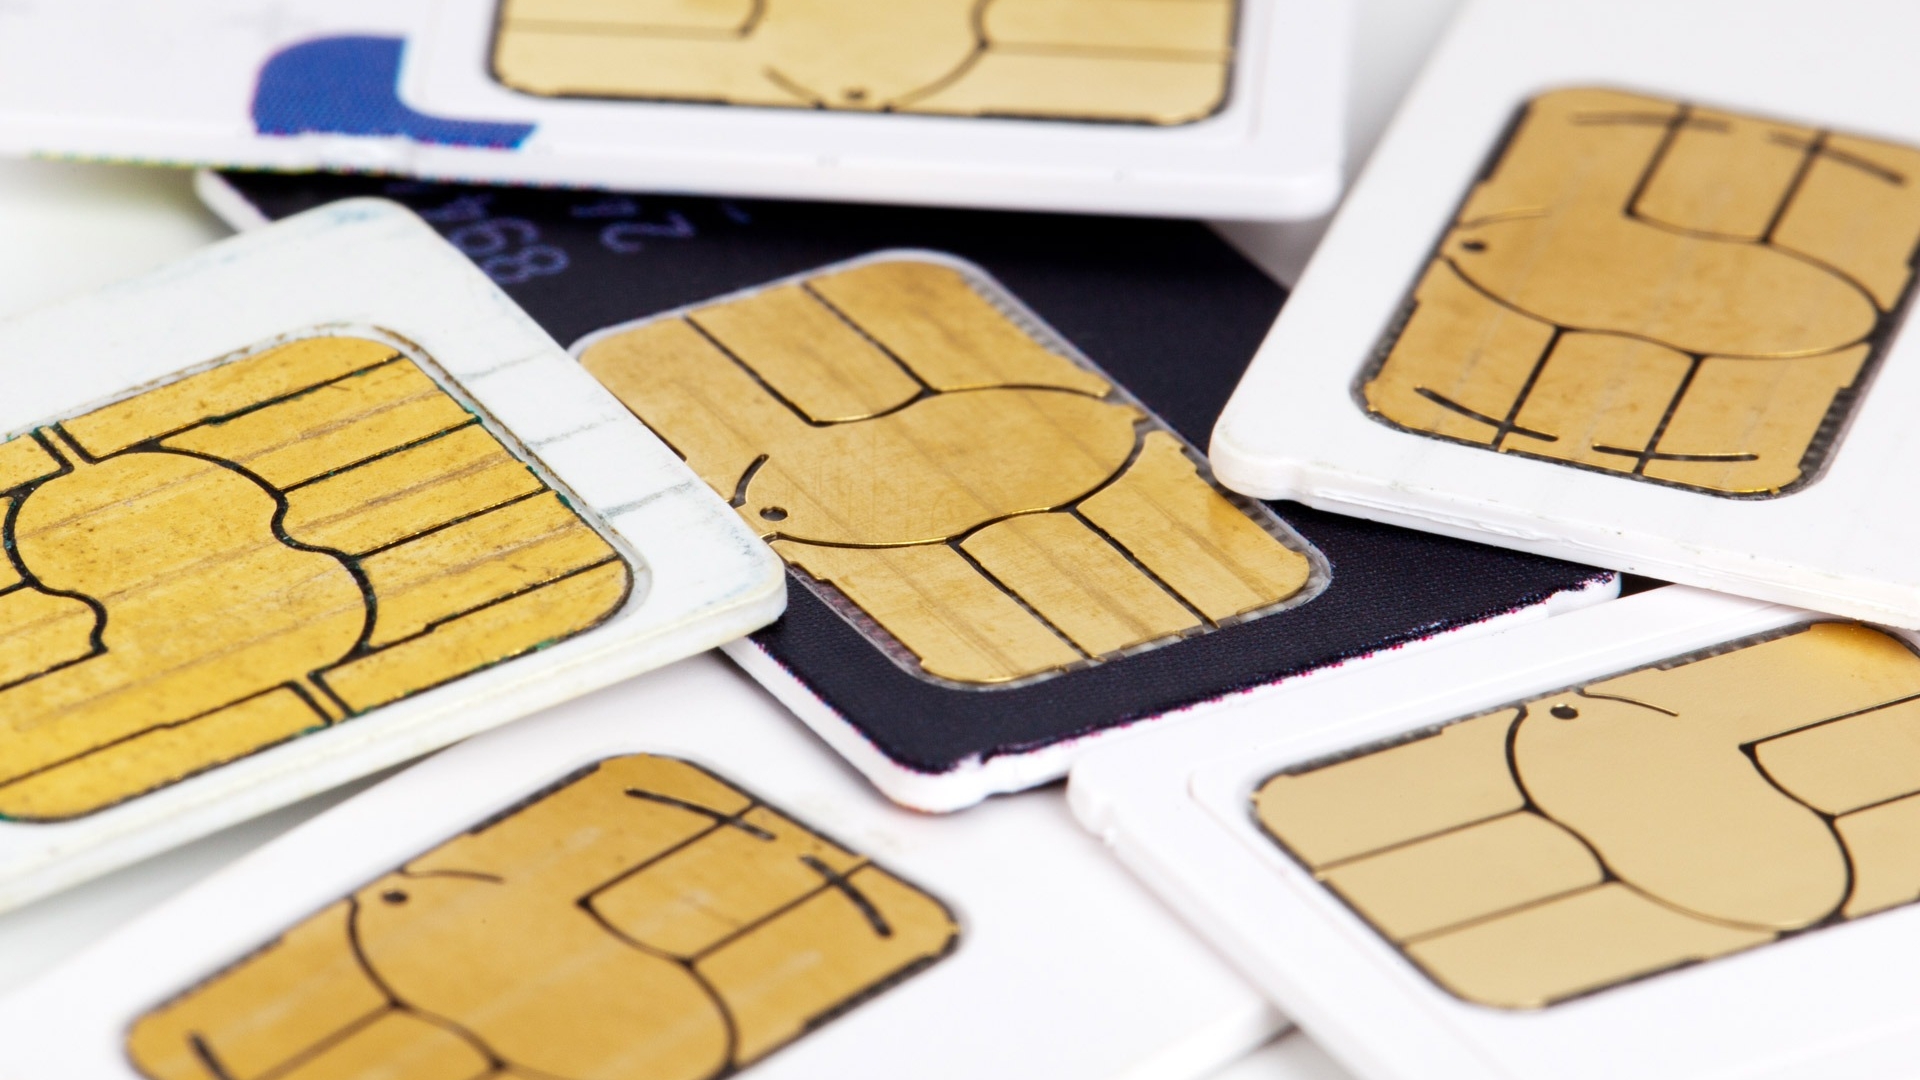 Операторы в России будут взымать плату за подключение сим-карт